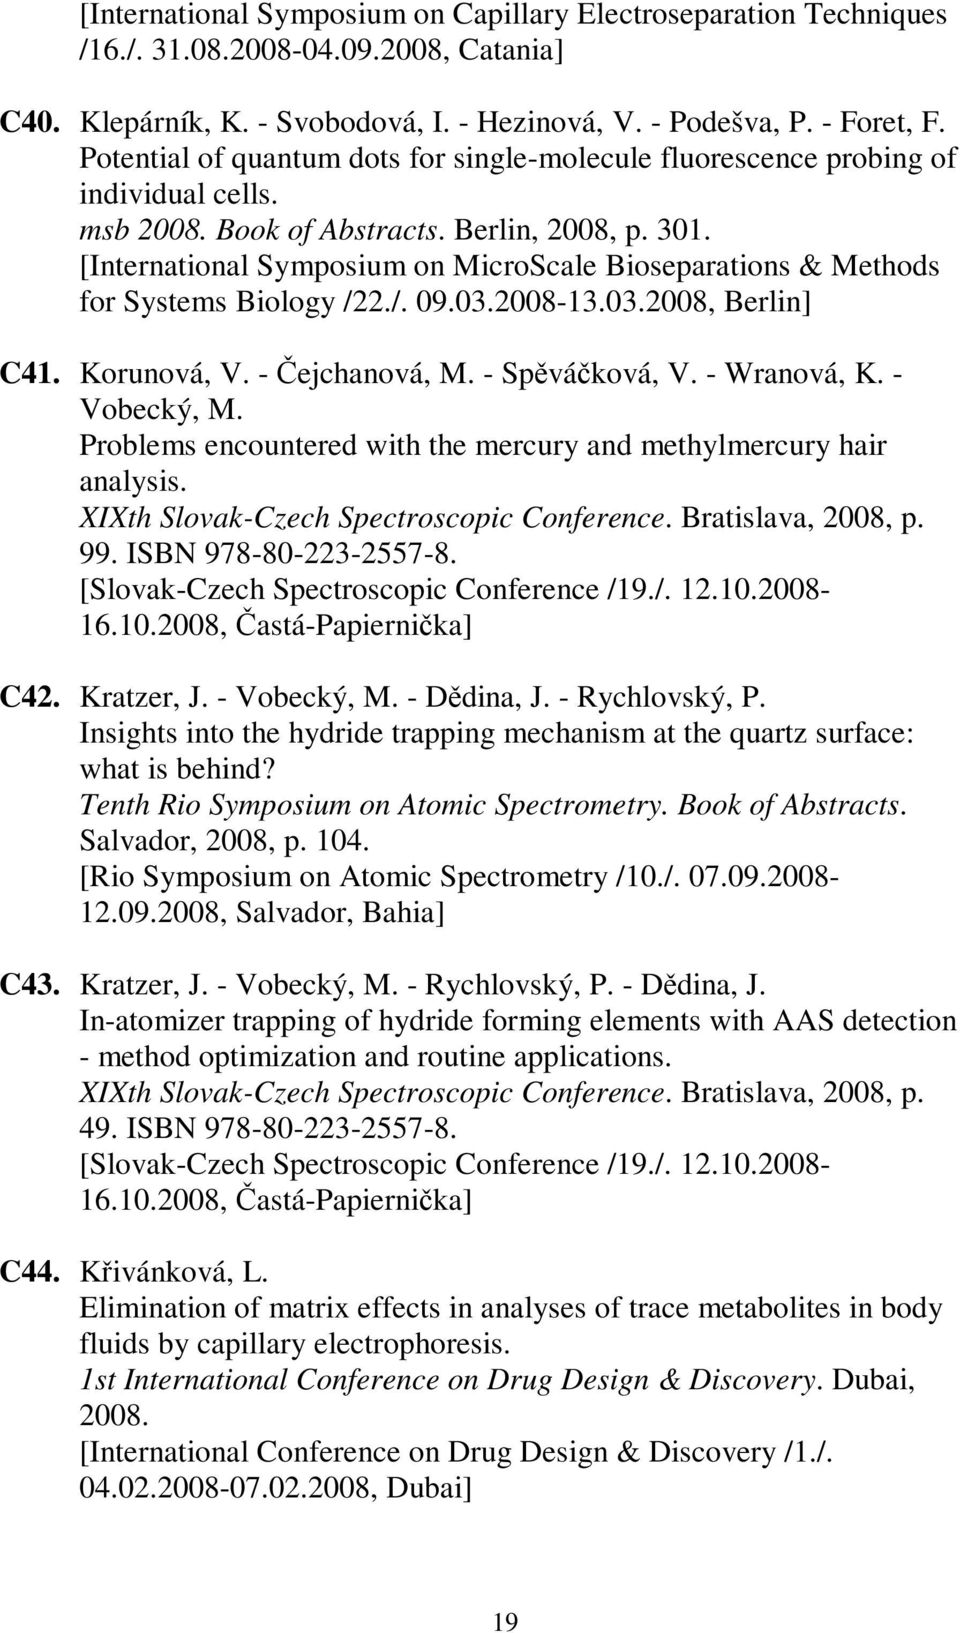 [International Symposium on MicroScale Bioseparations & Methods for Systems Biology /22./. 09.03.2008-13.03.2008, Berlin] C41. Korunová, V. - ejchanová, M. - Spváková, V. - Wranová, K. - Vobecký, M.